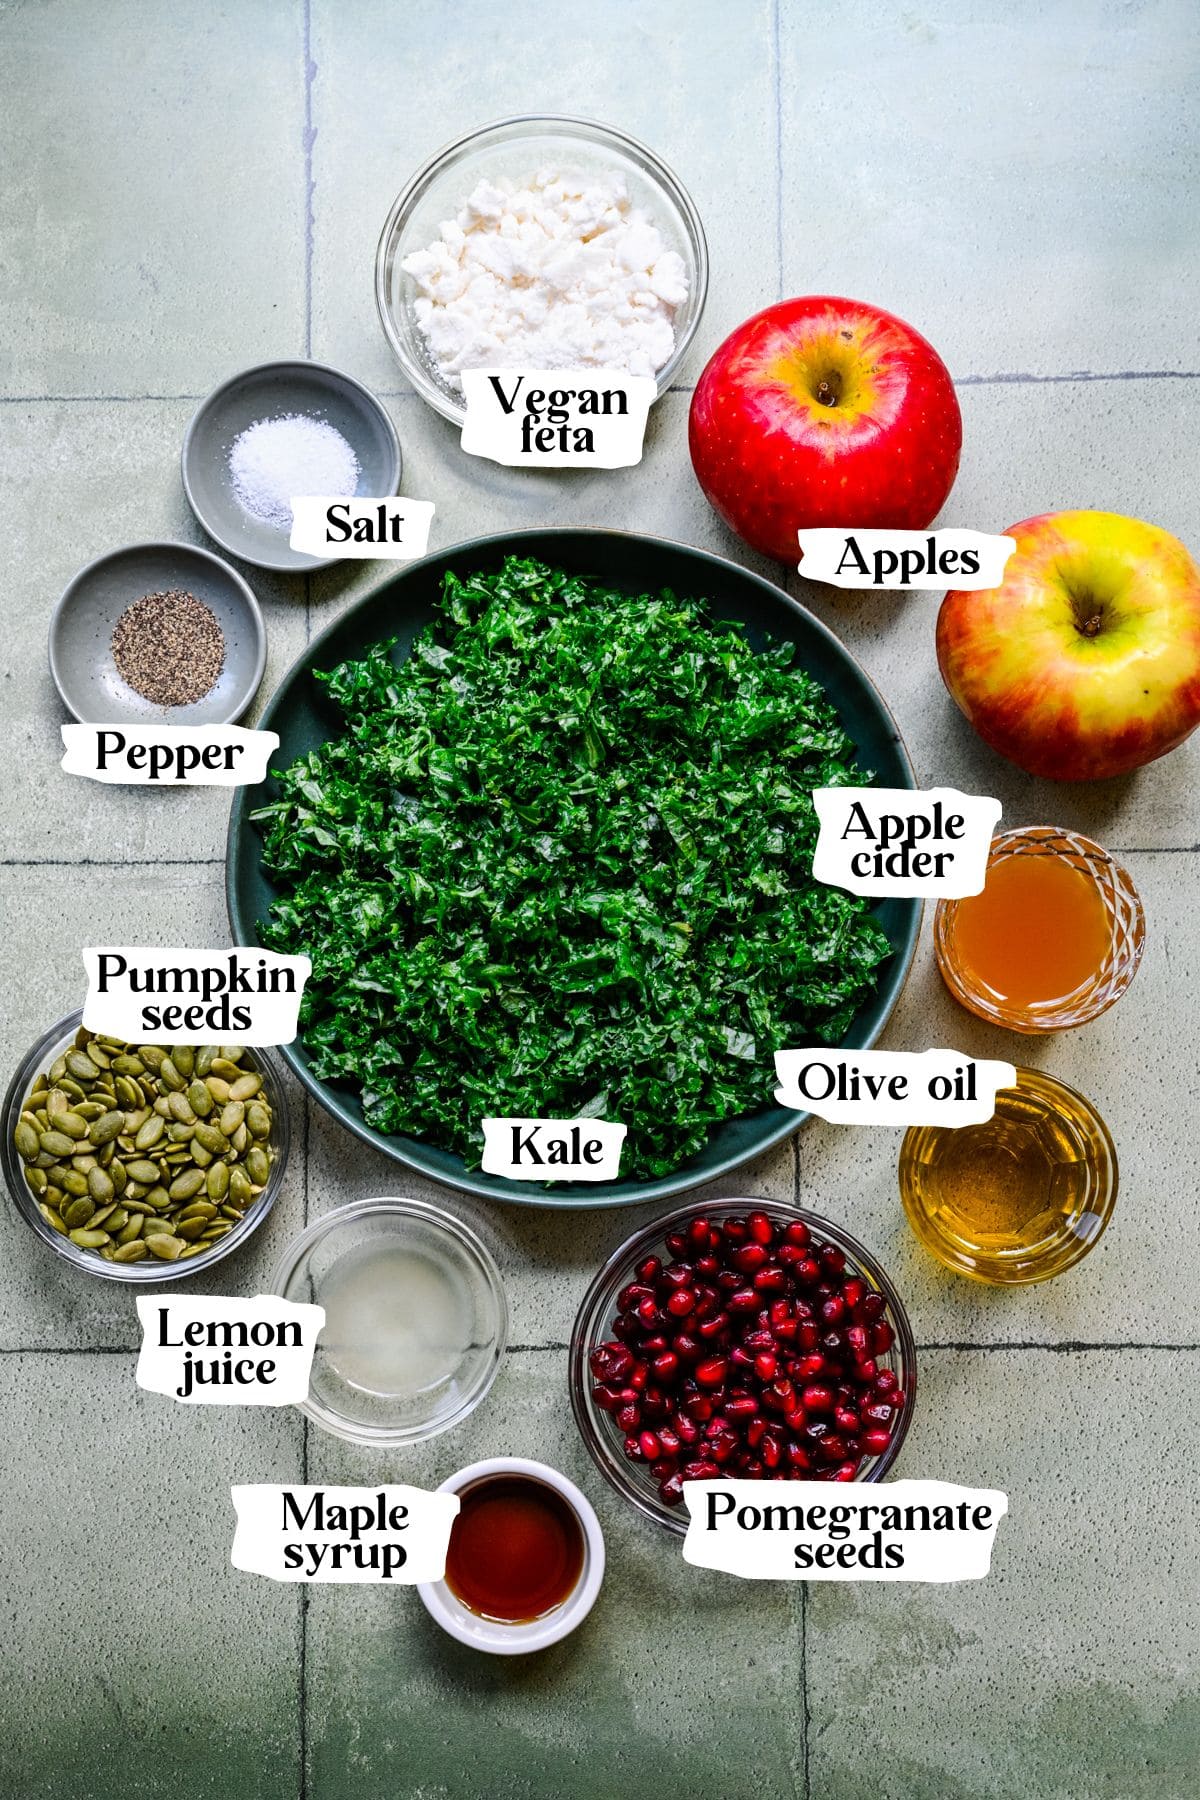 Kale apple salad ingredients including apples, pomegranate seeds and kale.